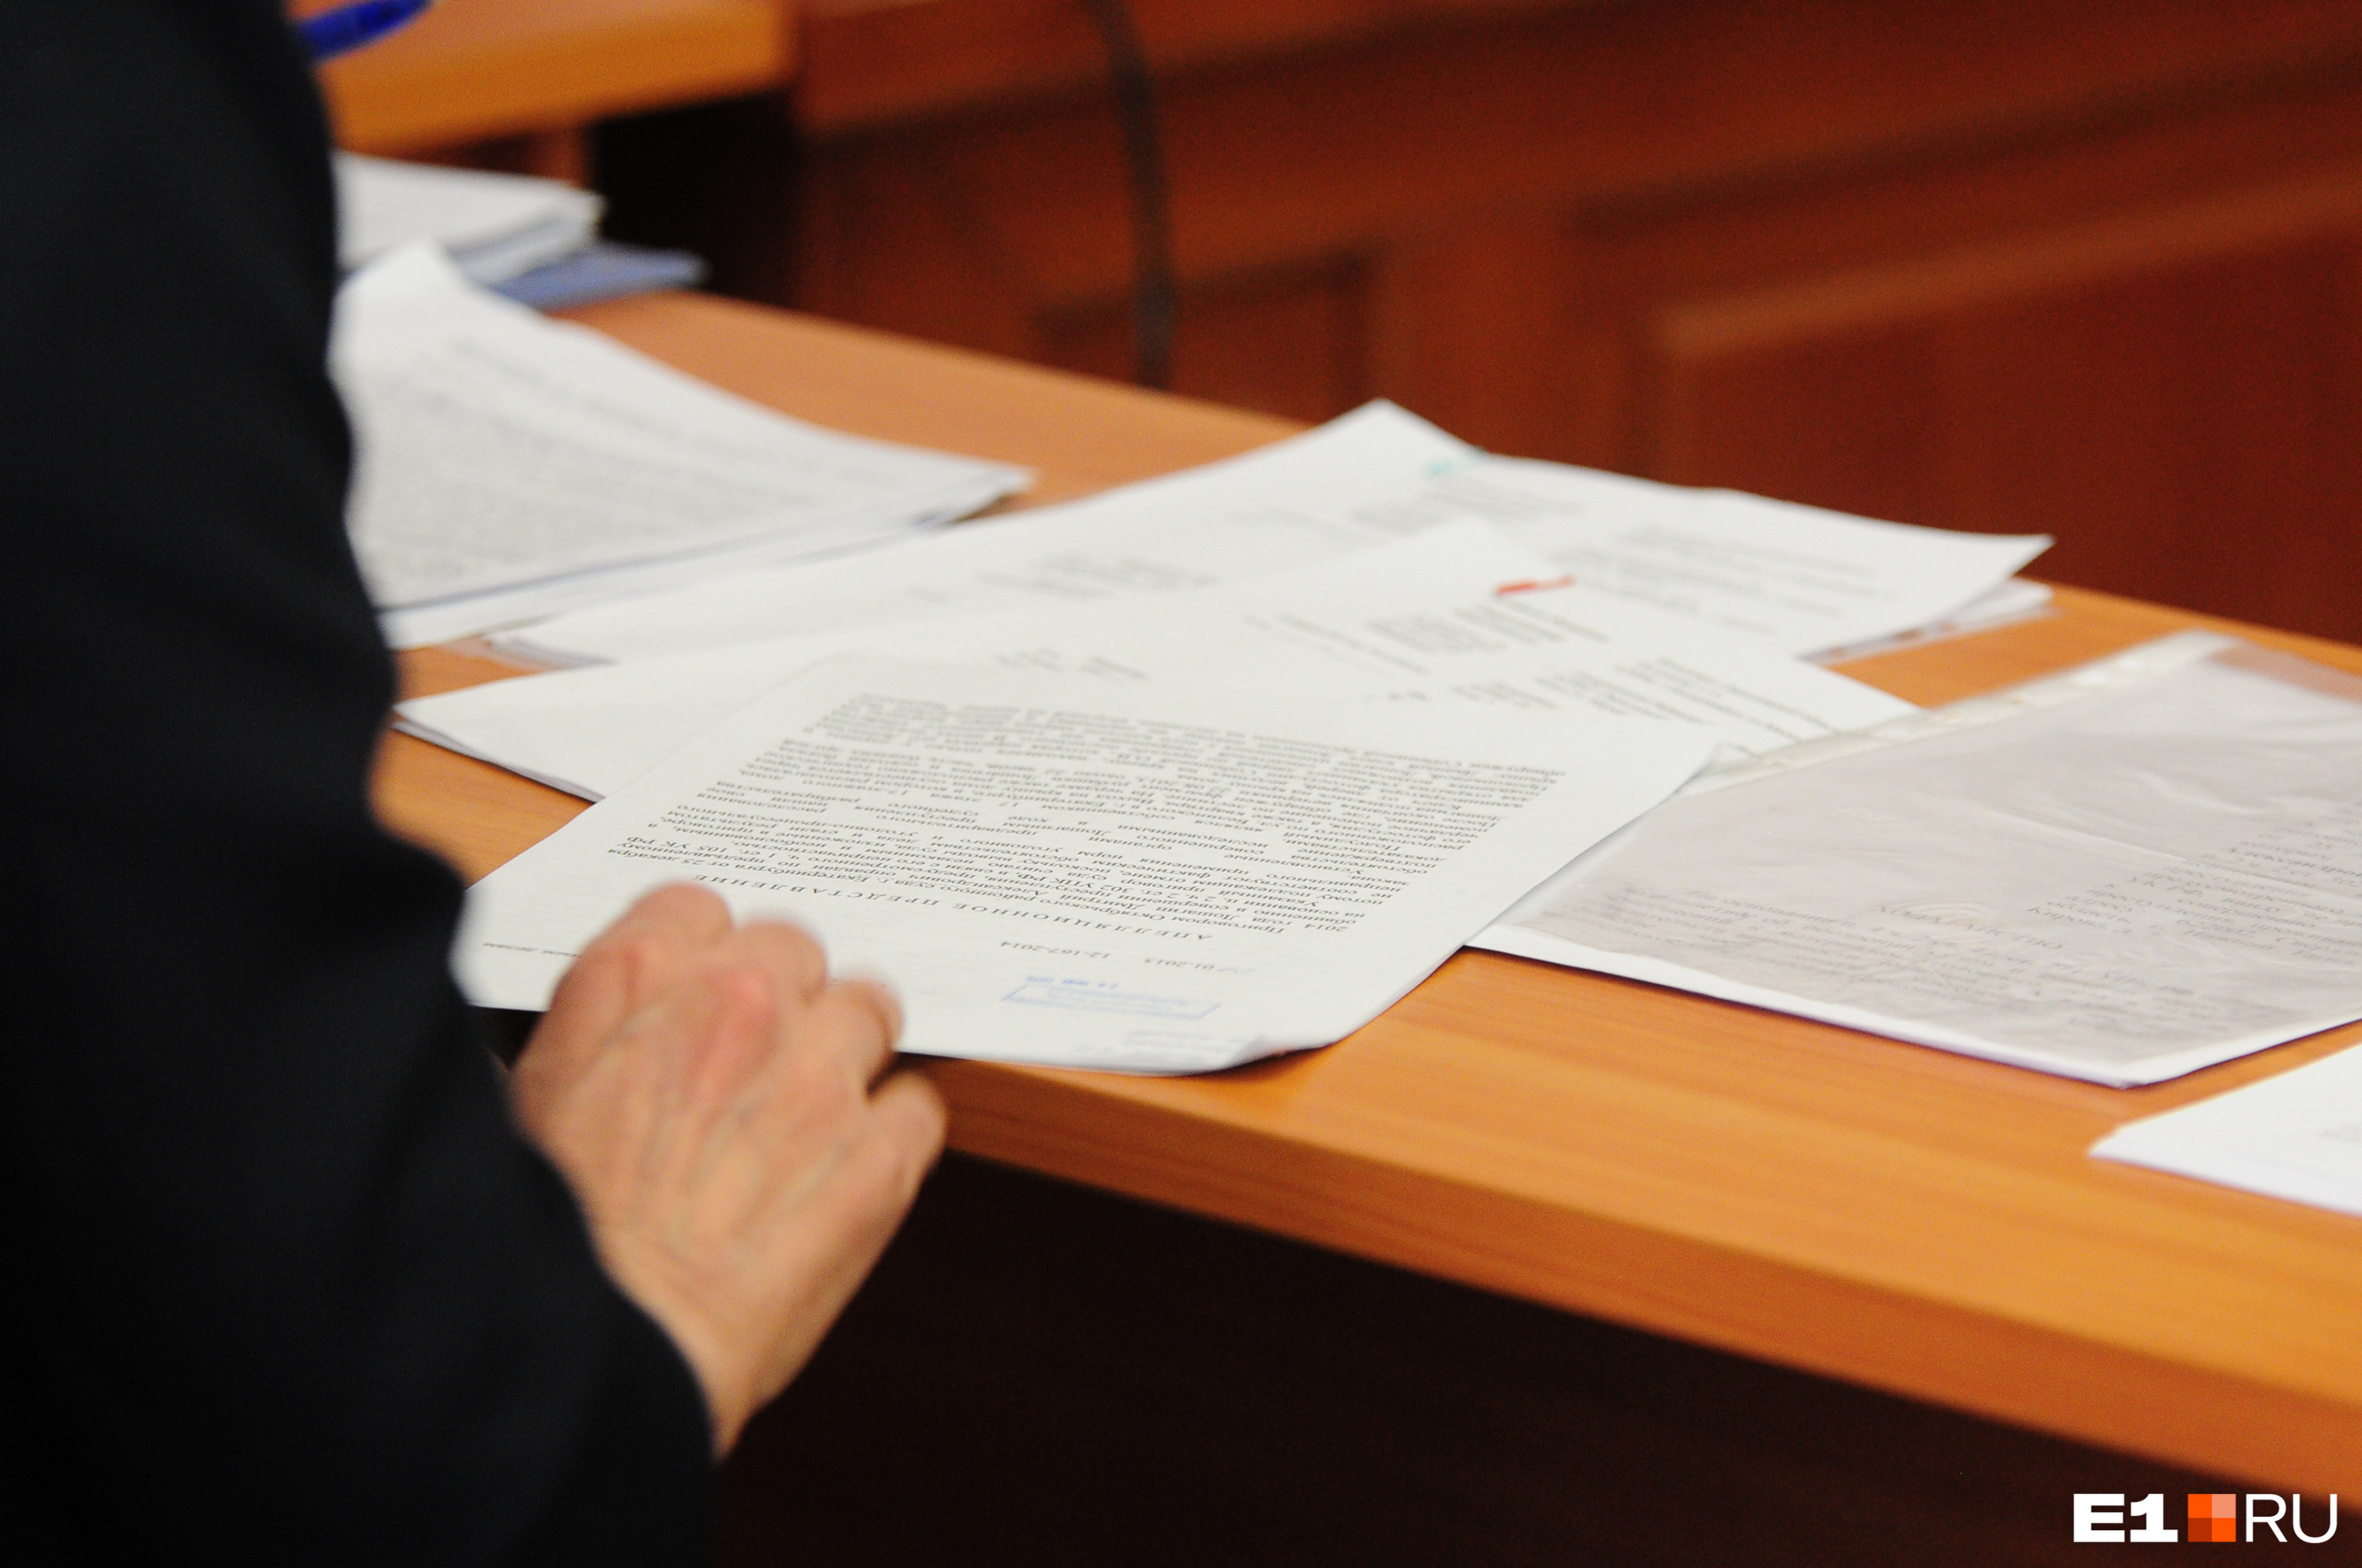 Экс-глава села в Забайкалье обвинила нынешнюю администрацию в подделке своей подписи